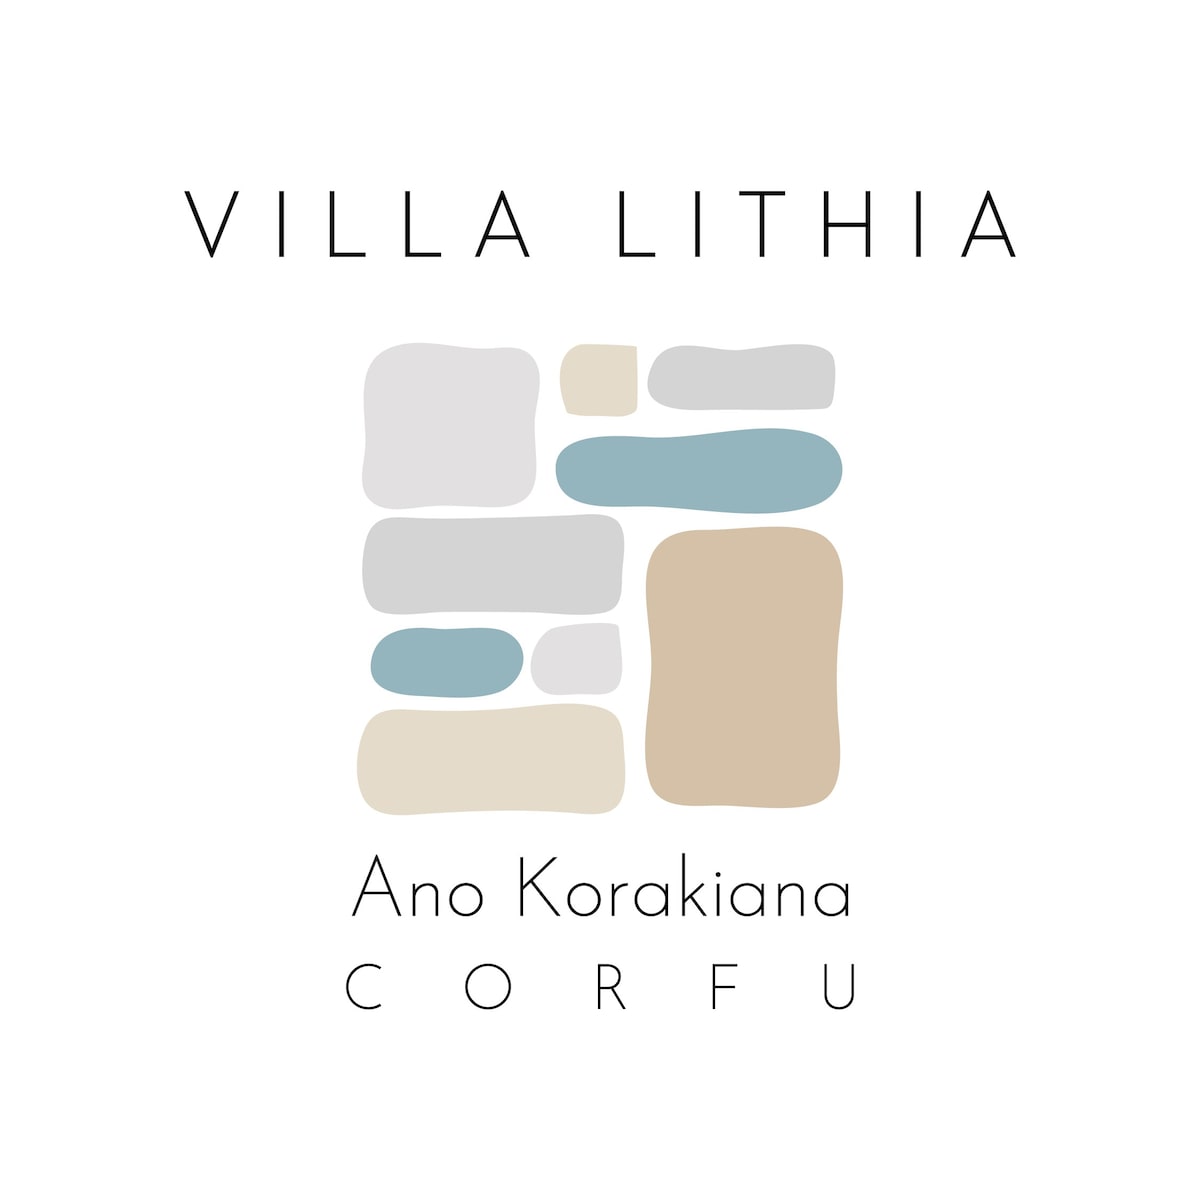 Villa Lithia Ano Korakiana